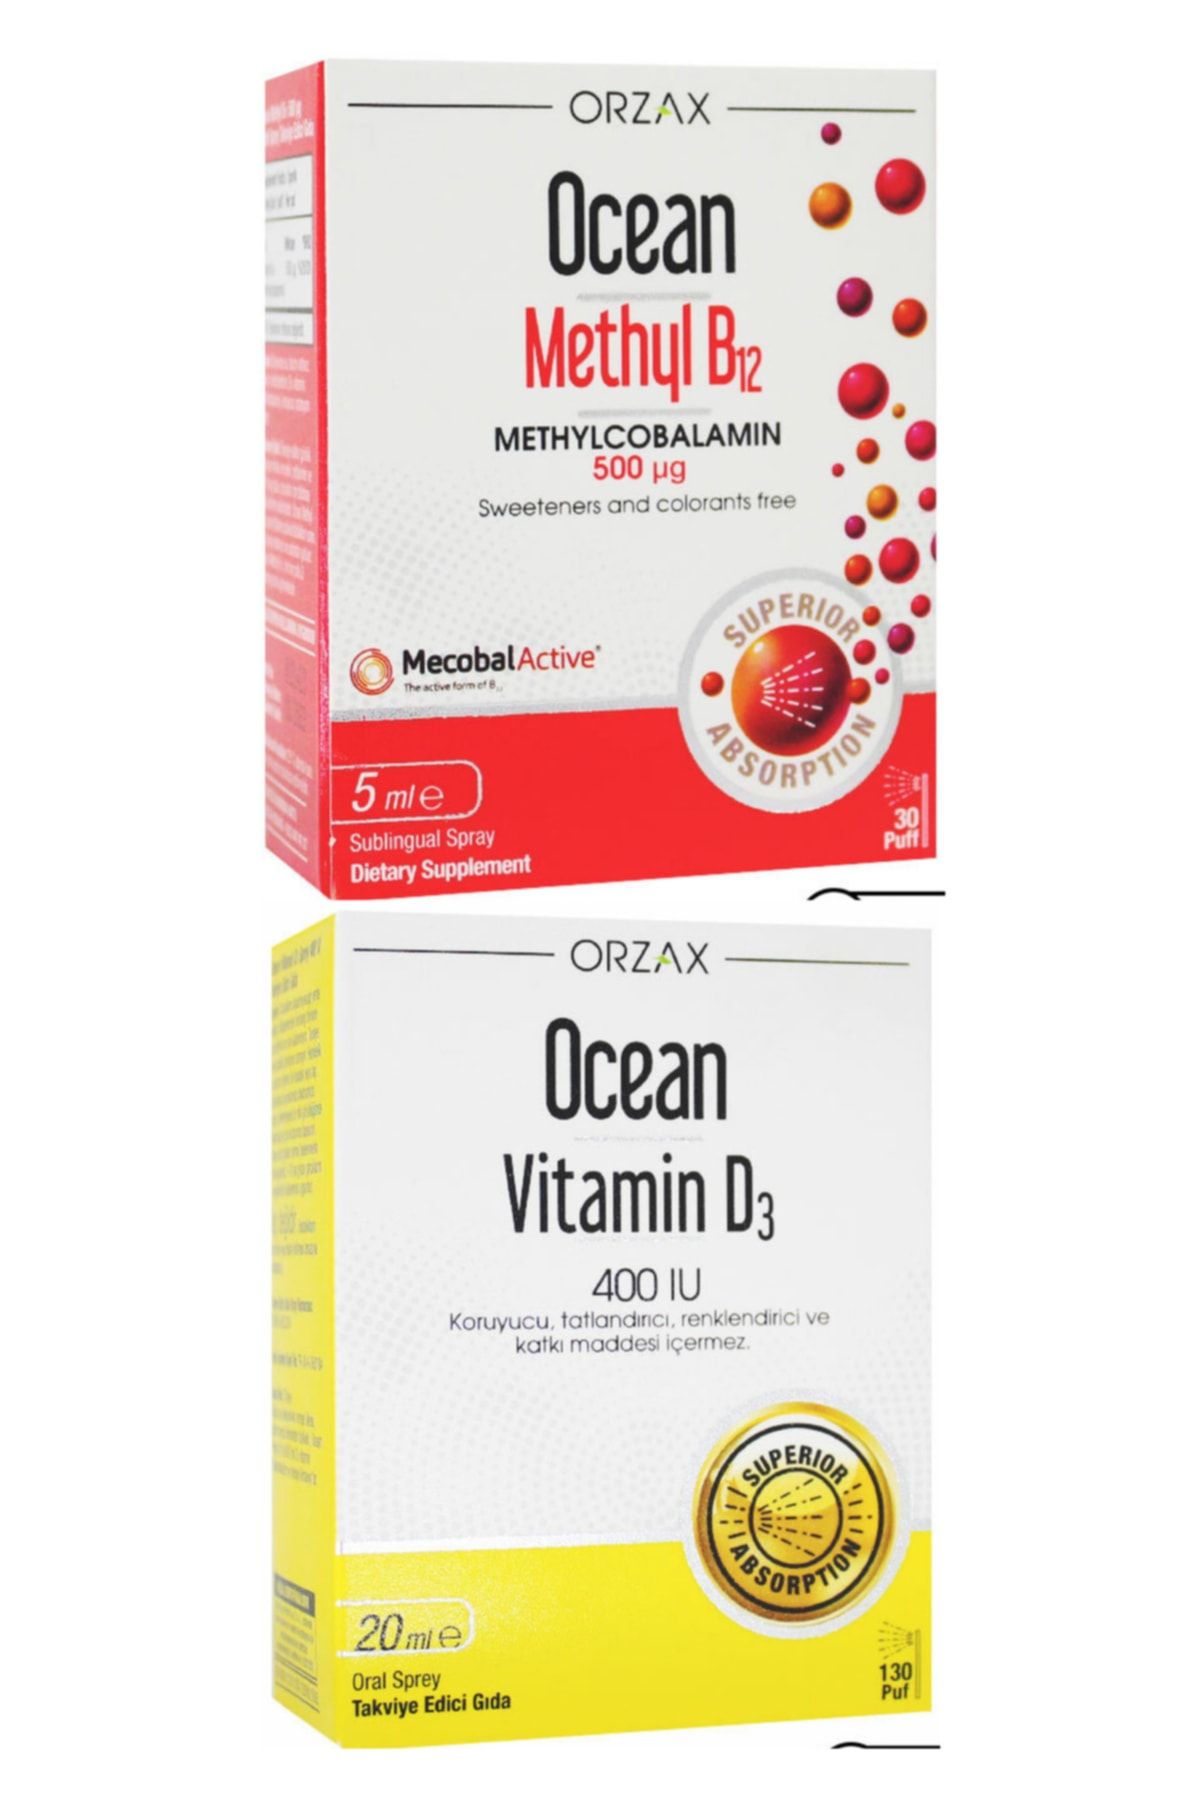 Ocean Methyl B12 Sprey 500mcg 5ml Vitamin D3 400ıu Sprey 20ml